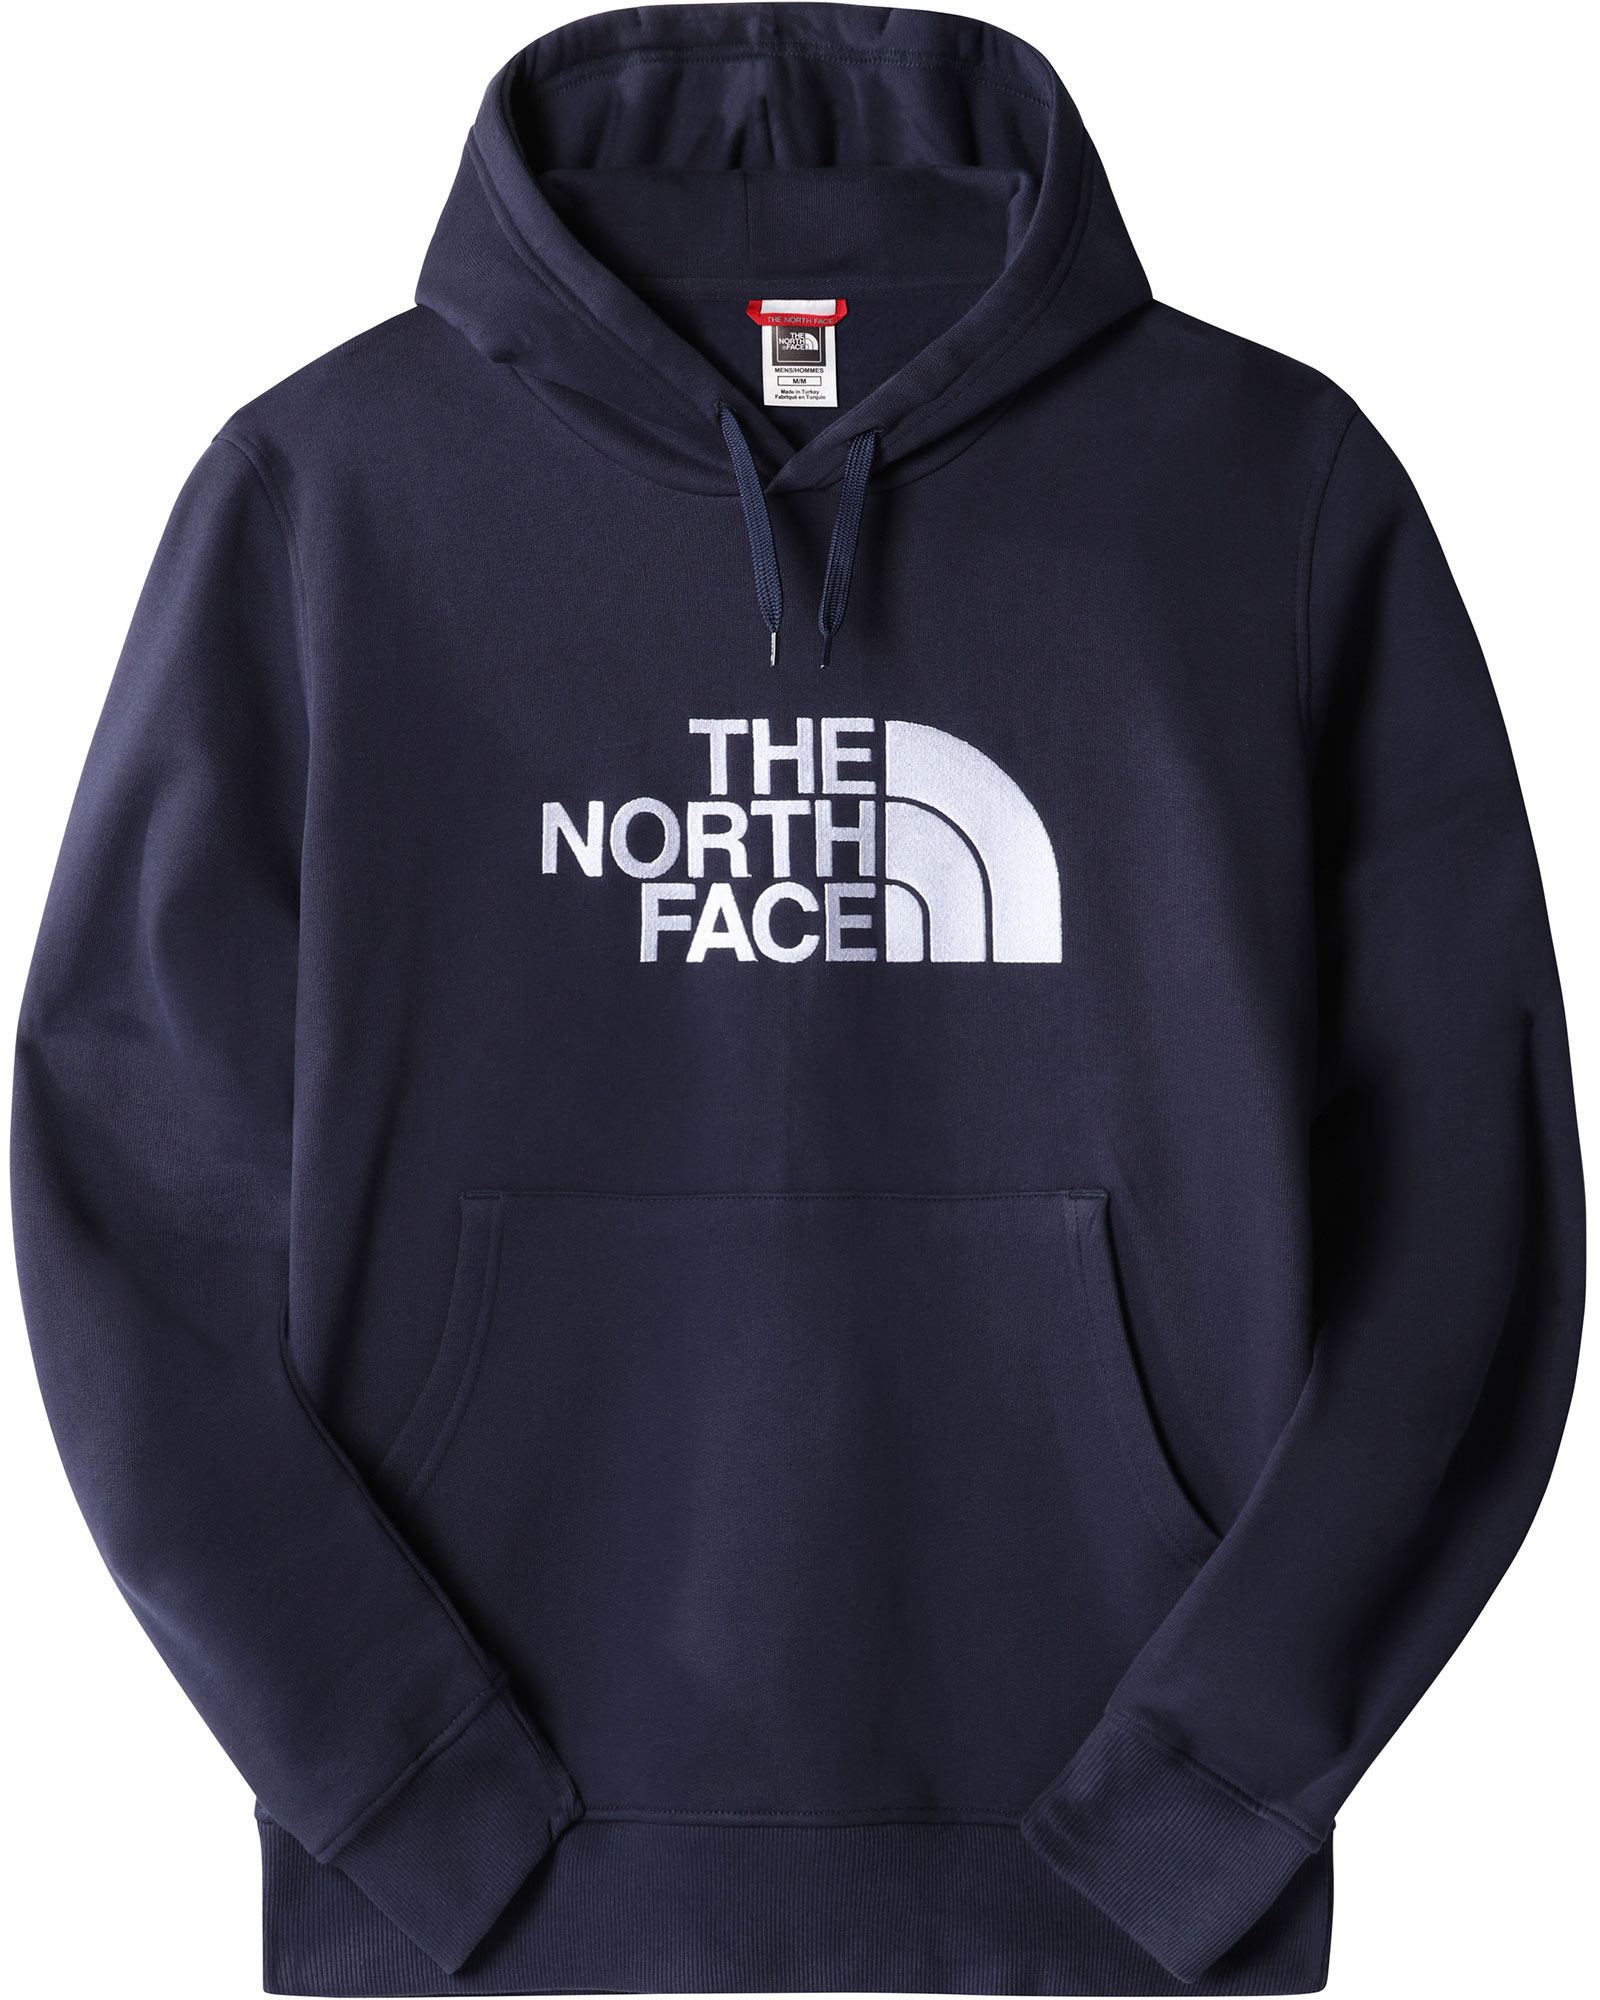 The North Face Drew Peak Men’s Hoodie - Summit Navy M